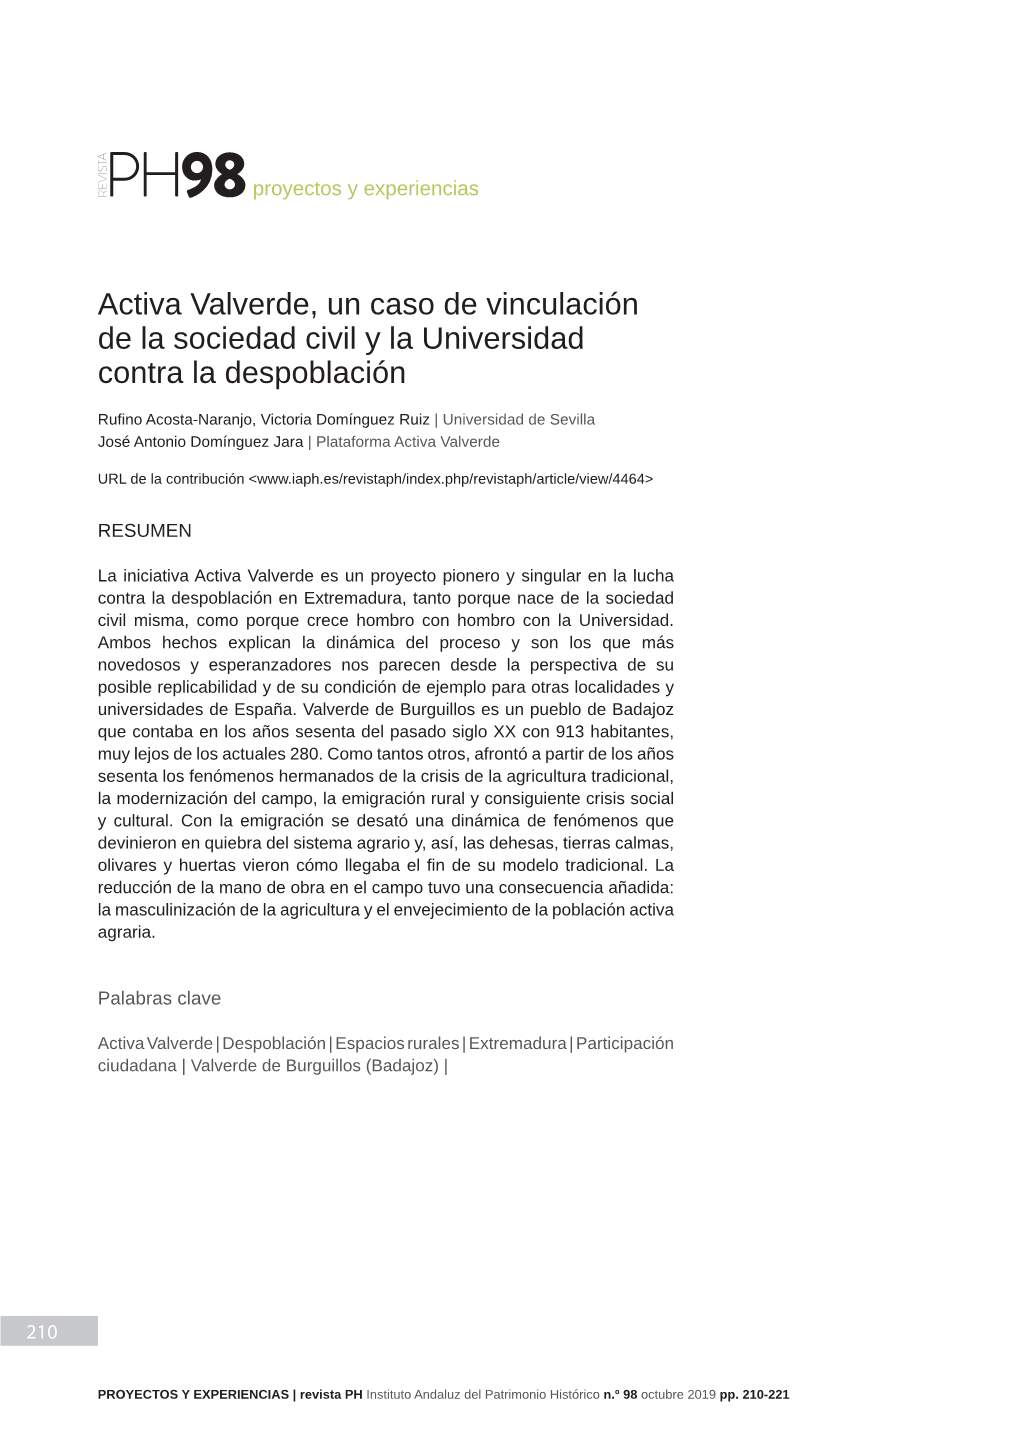 Activa Valverde, Un Caso De Vinculación De La Sociedad Civil Y La Universidad Contra La Despoblación